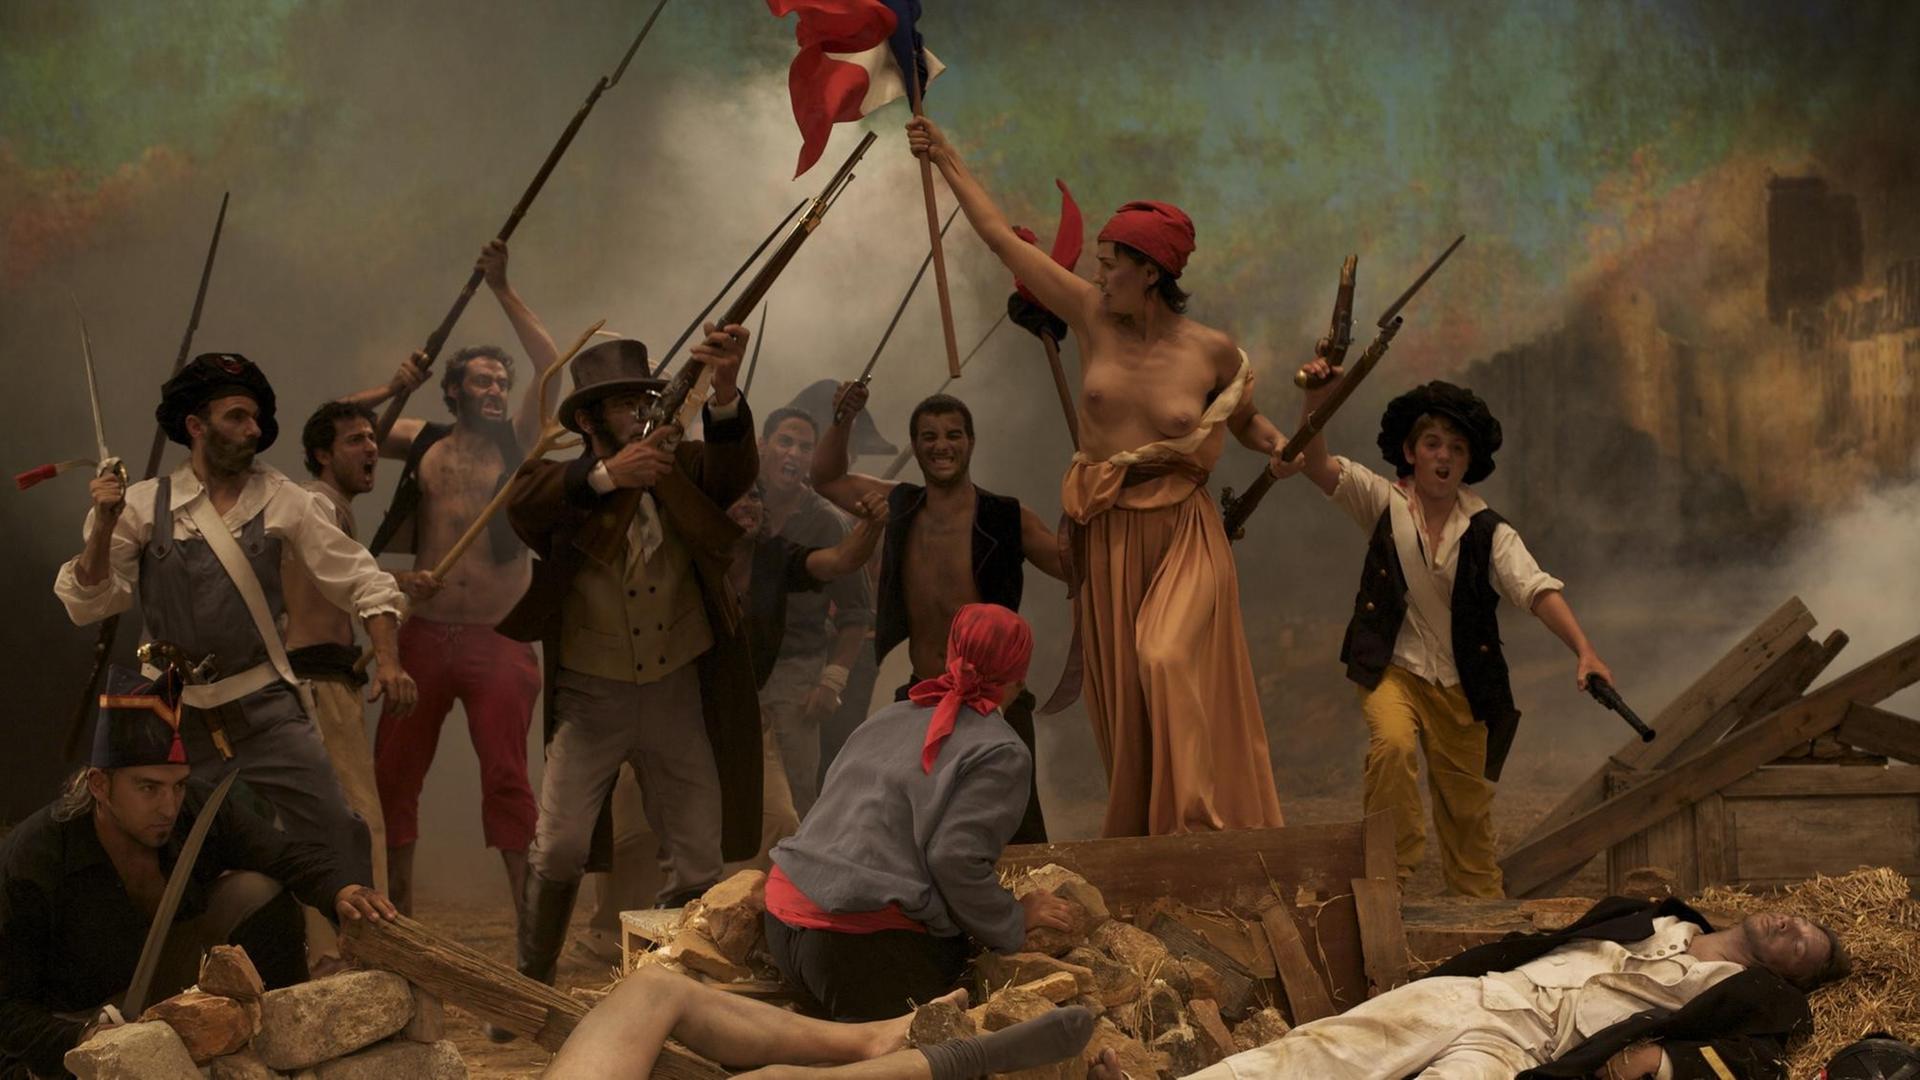 Die Videoprojektion "La Liberté Raisonée" von Cristina Lucas. Diese zeigt das politische Symbolbild schlechthin: Die Freiheit erkämpft sich ihren Weg, nach dem berühmten Gemälde von Eugene Delacroix.